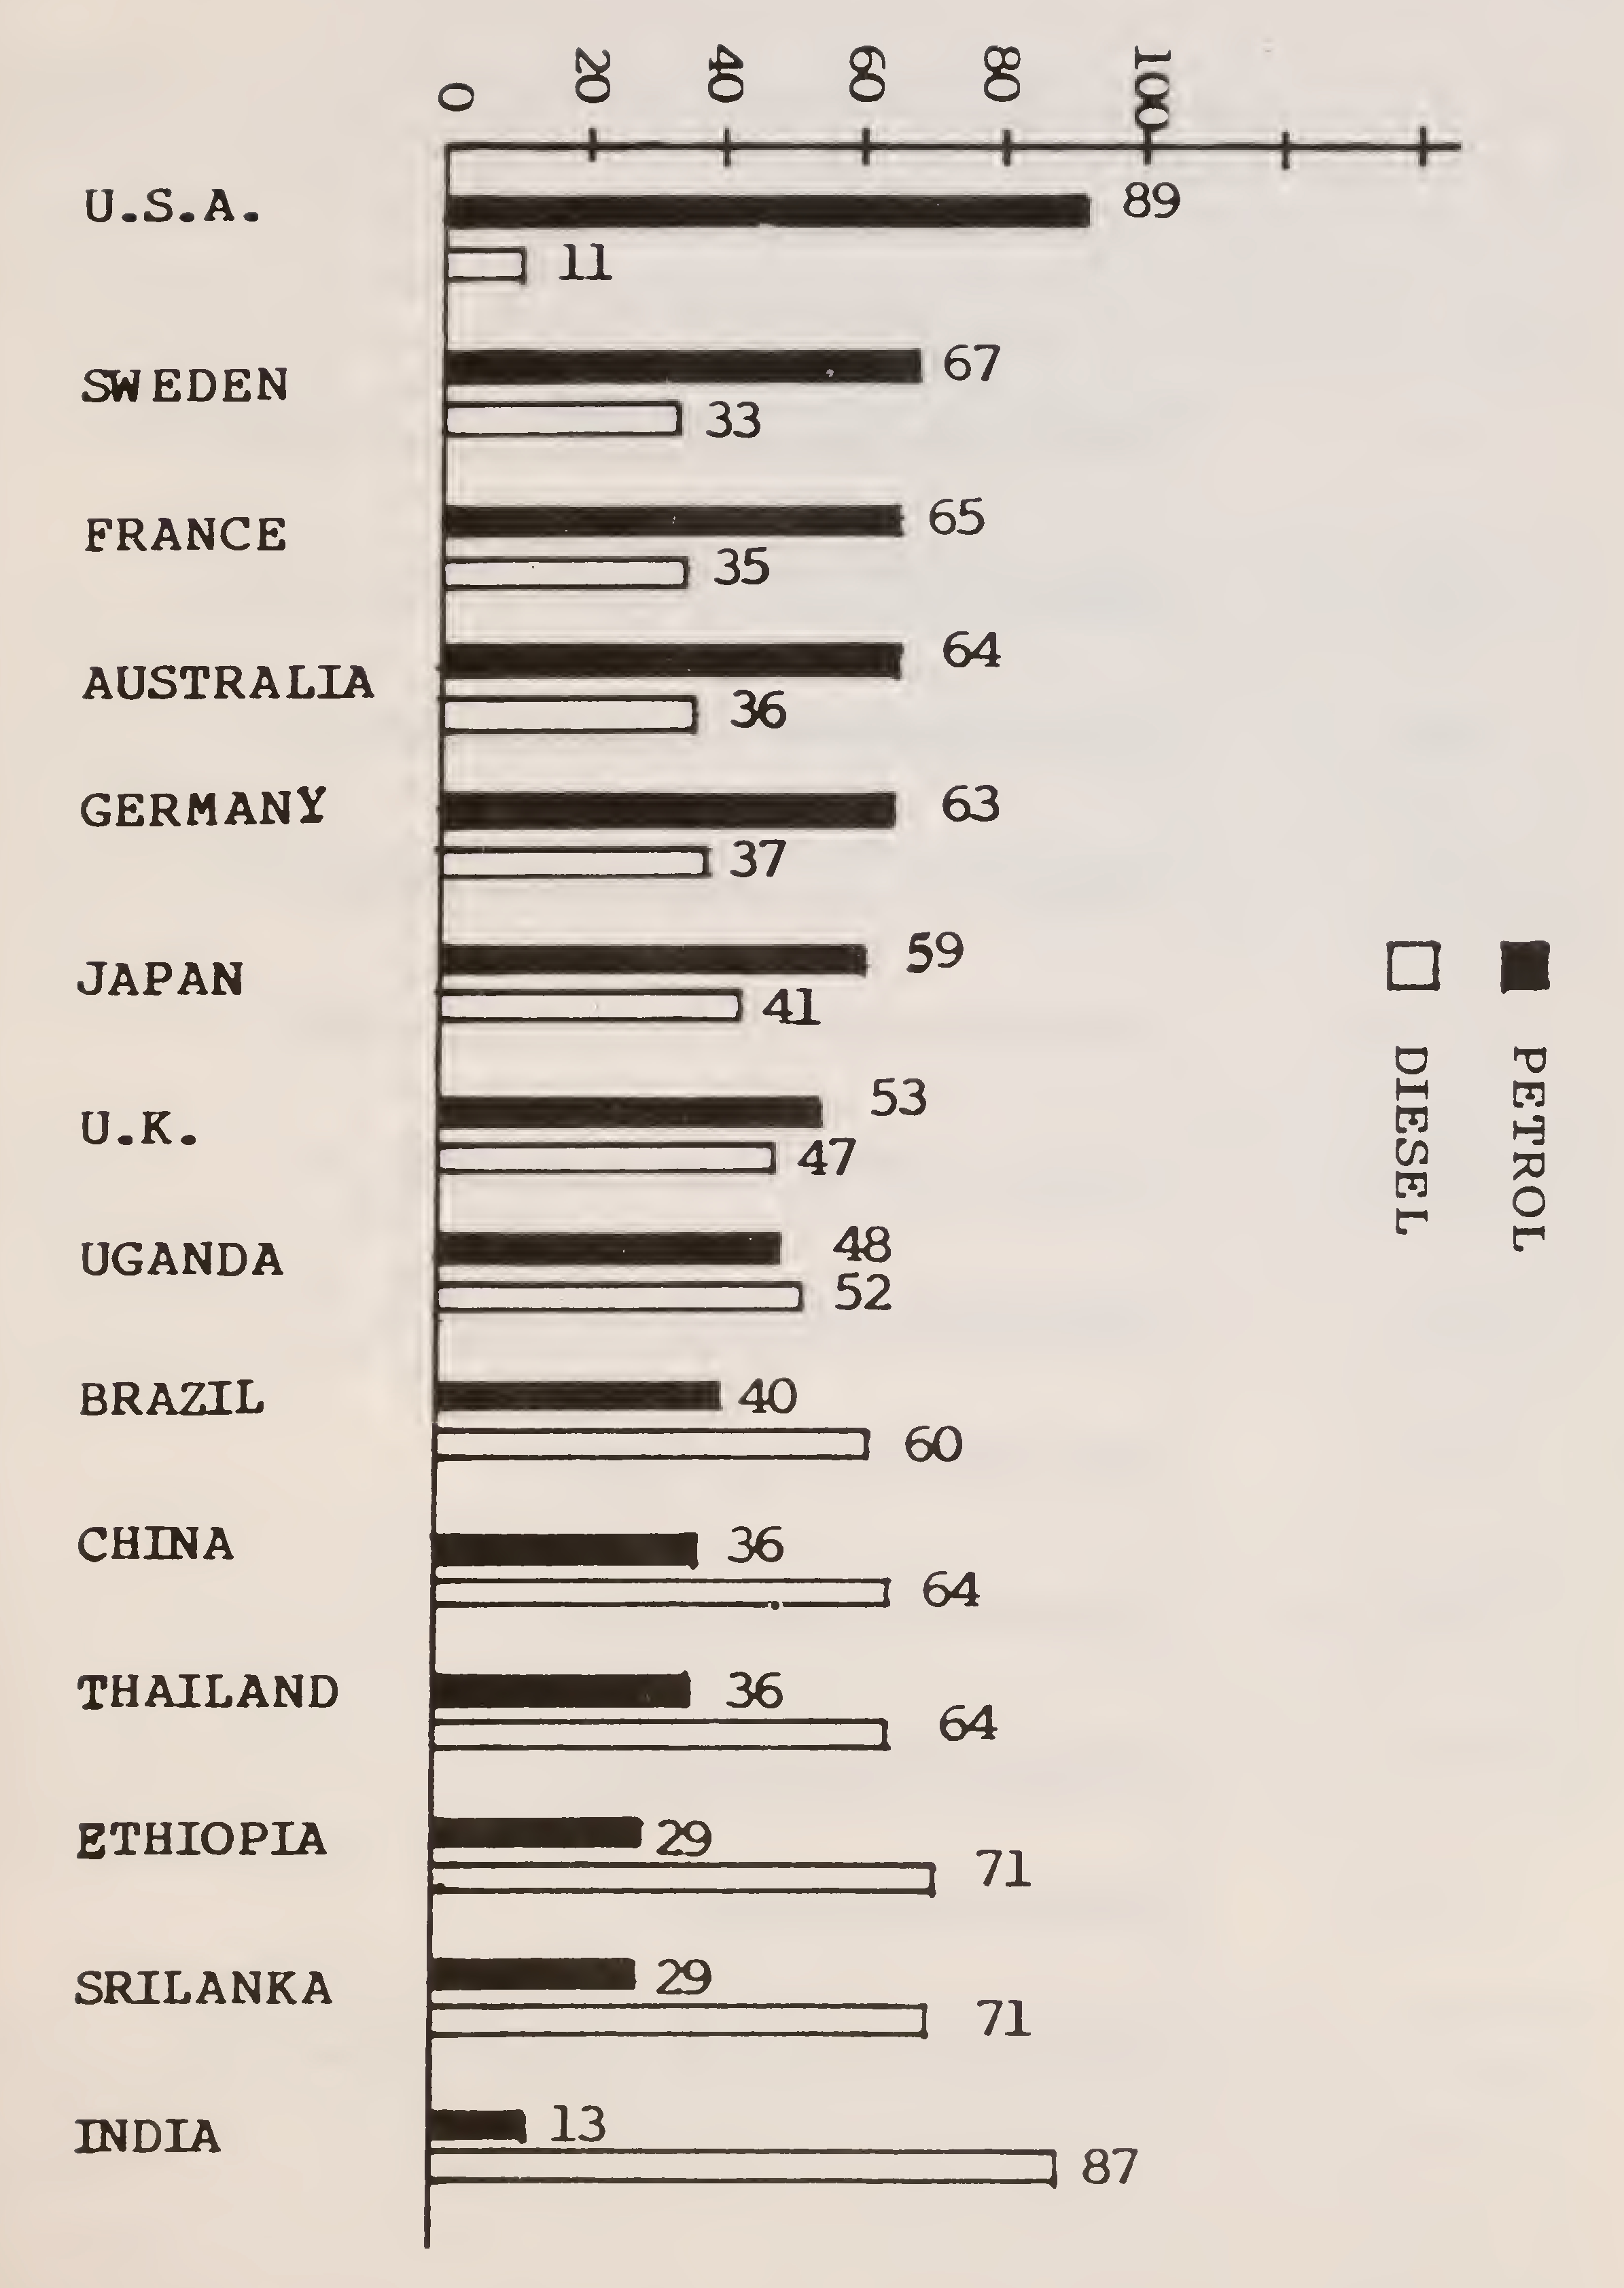 अंजीर १.. काही निवडक देशांमध्ये पेट्रोल आणि डिझेल वापराची टक्केवारी